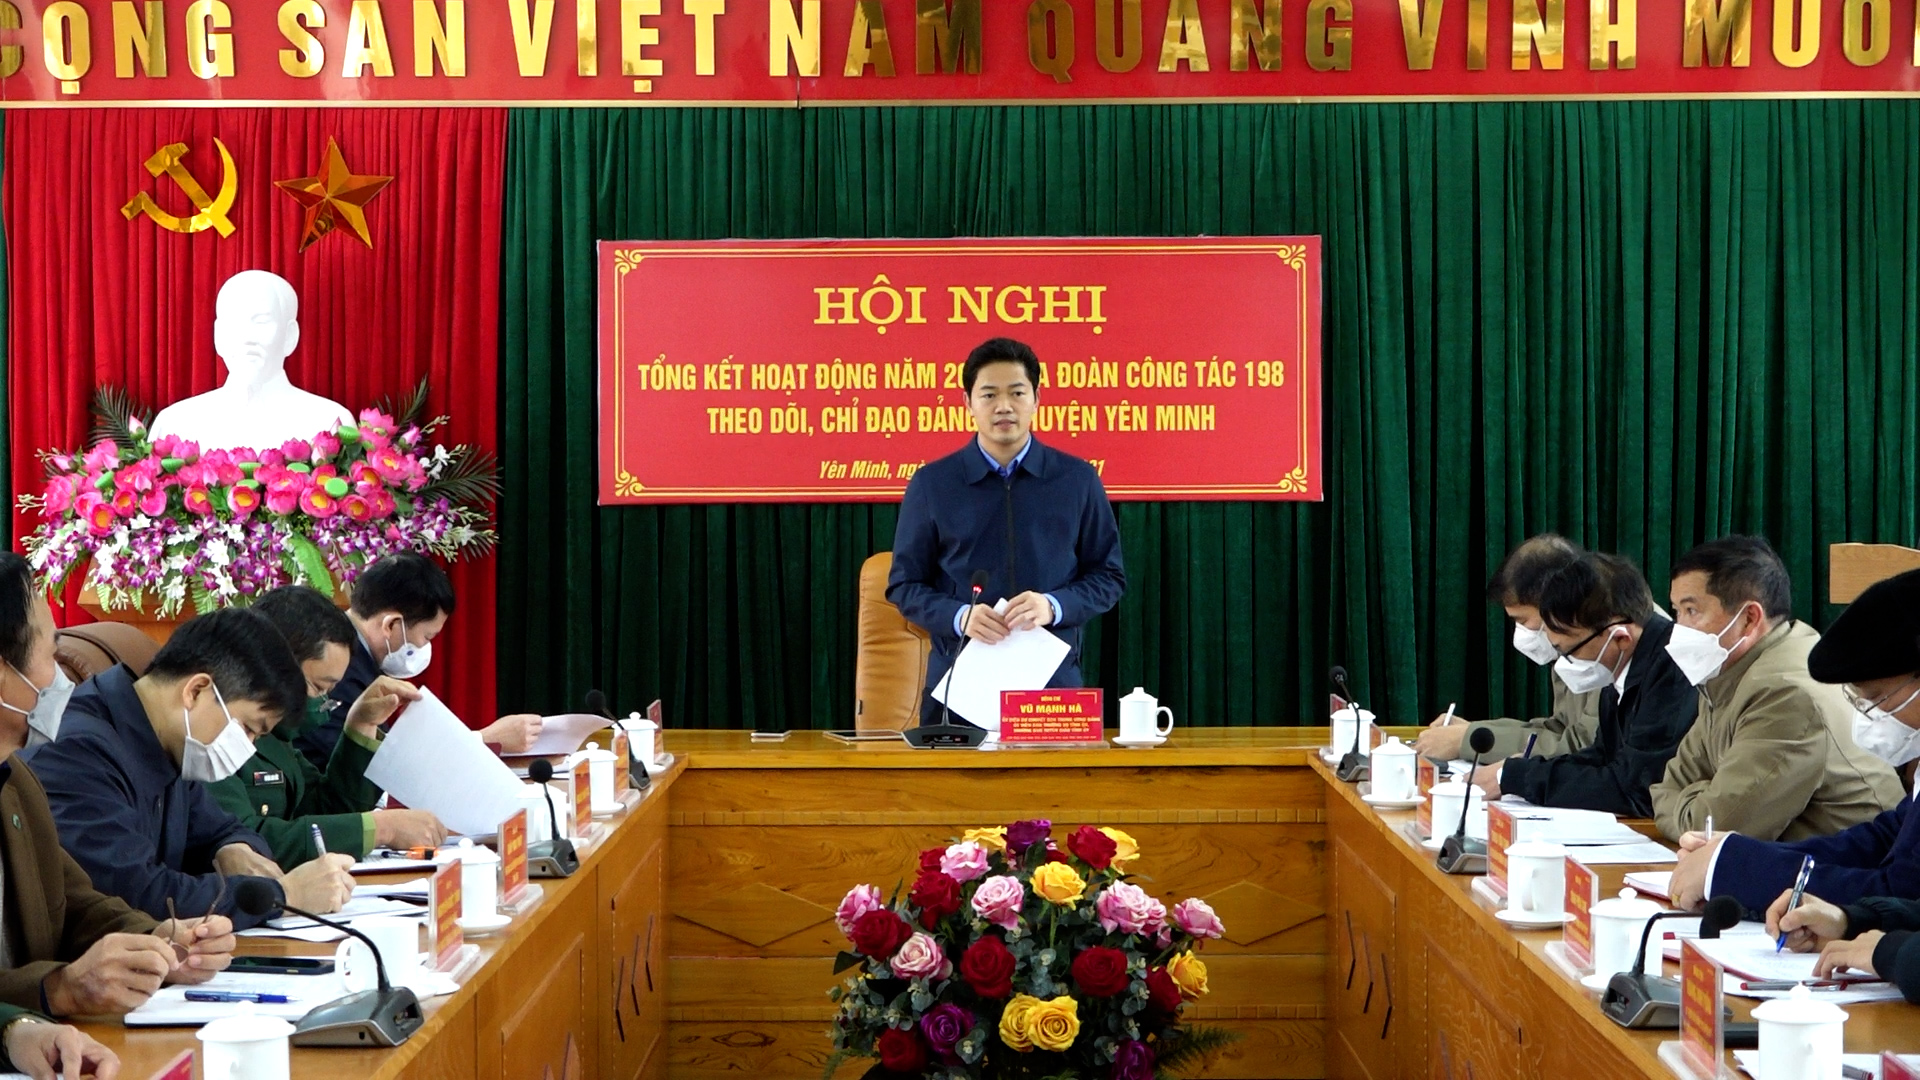 Hội nghị tổng kết hoạt động năm 2021 của đoàn công tác 198 theo dõi chỉ đạo huyện Yên Minh